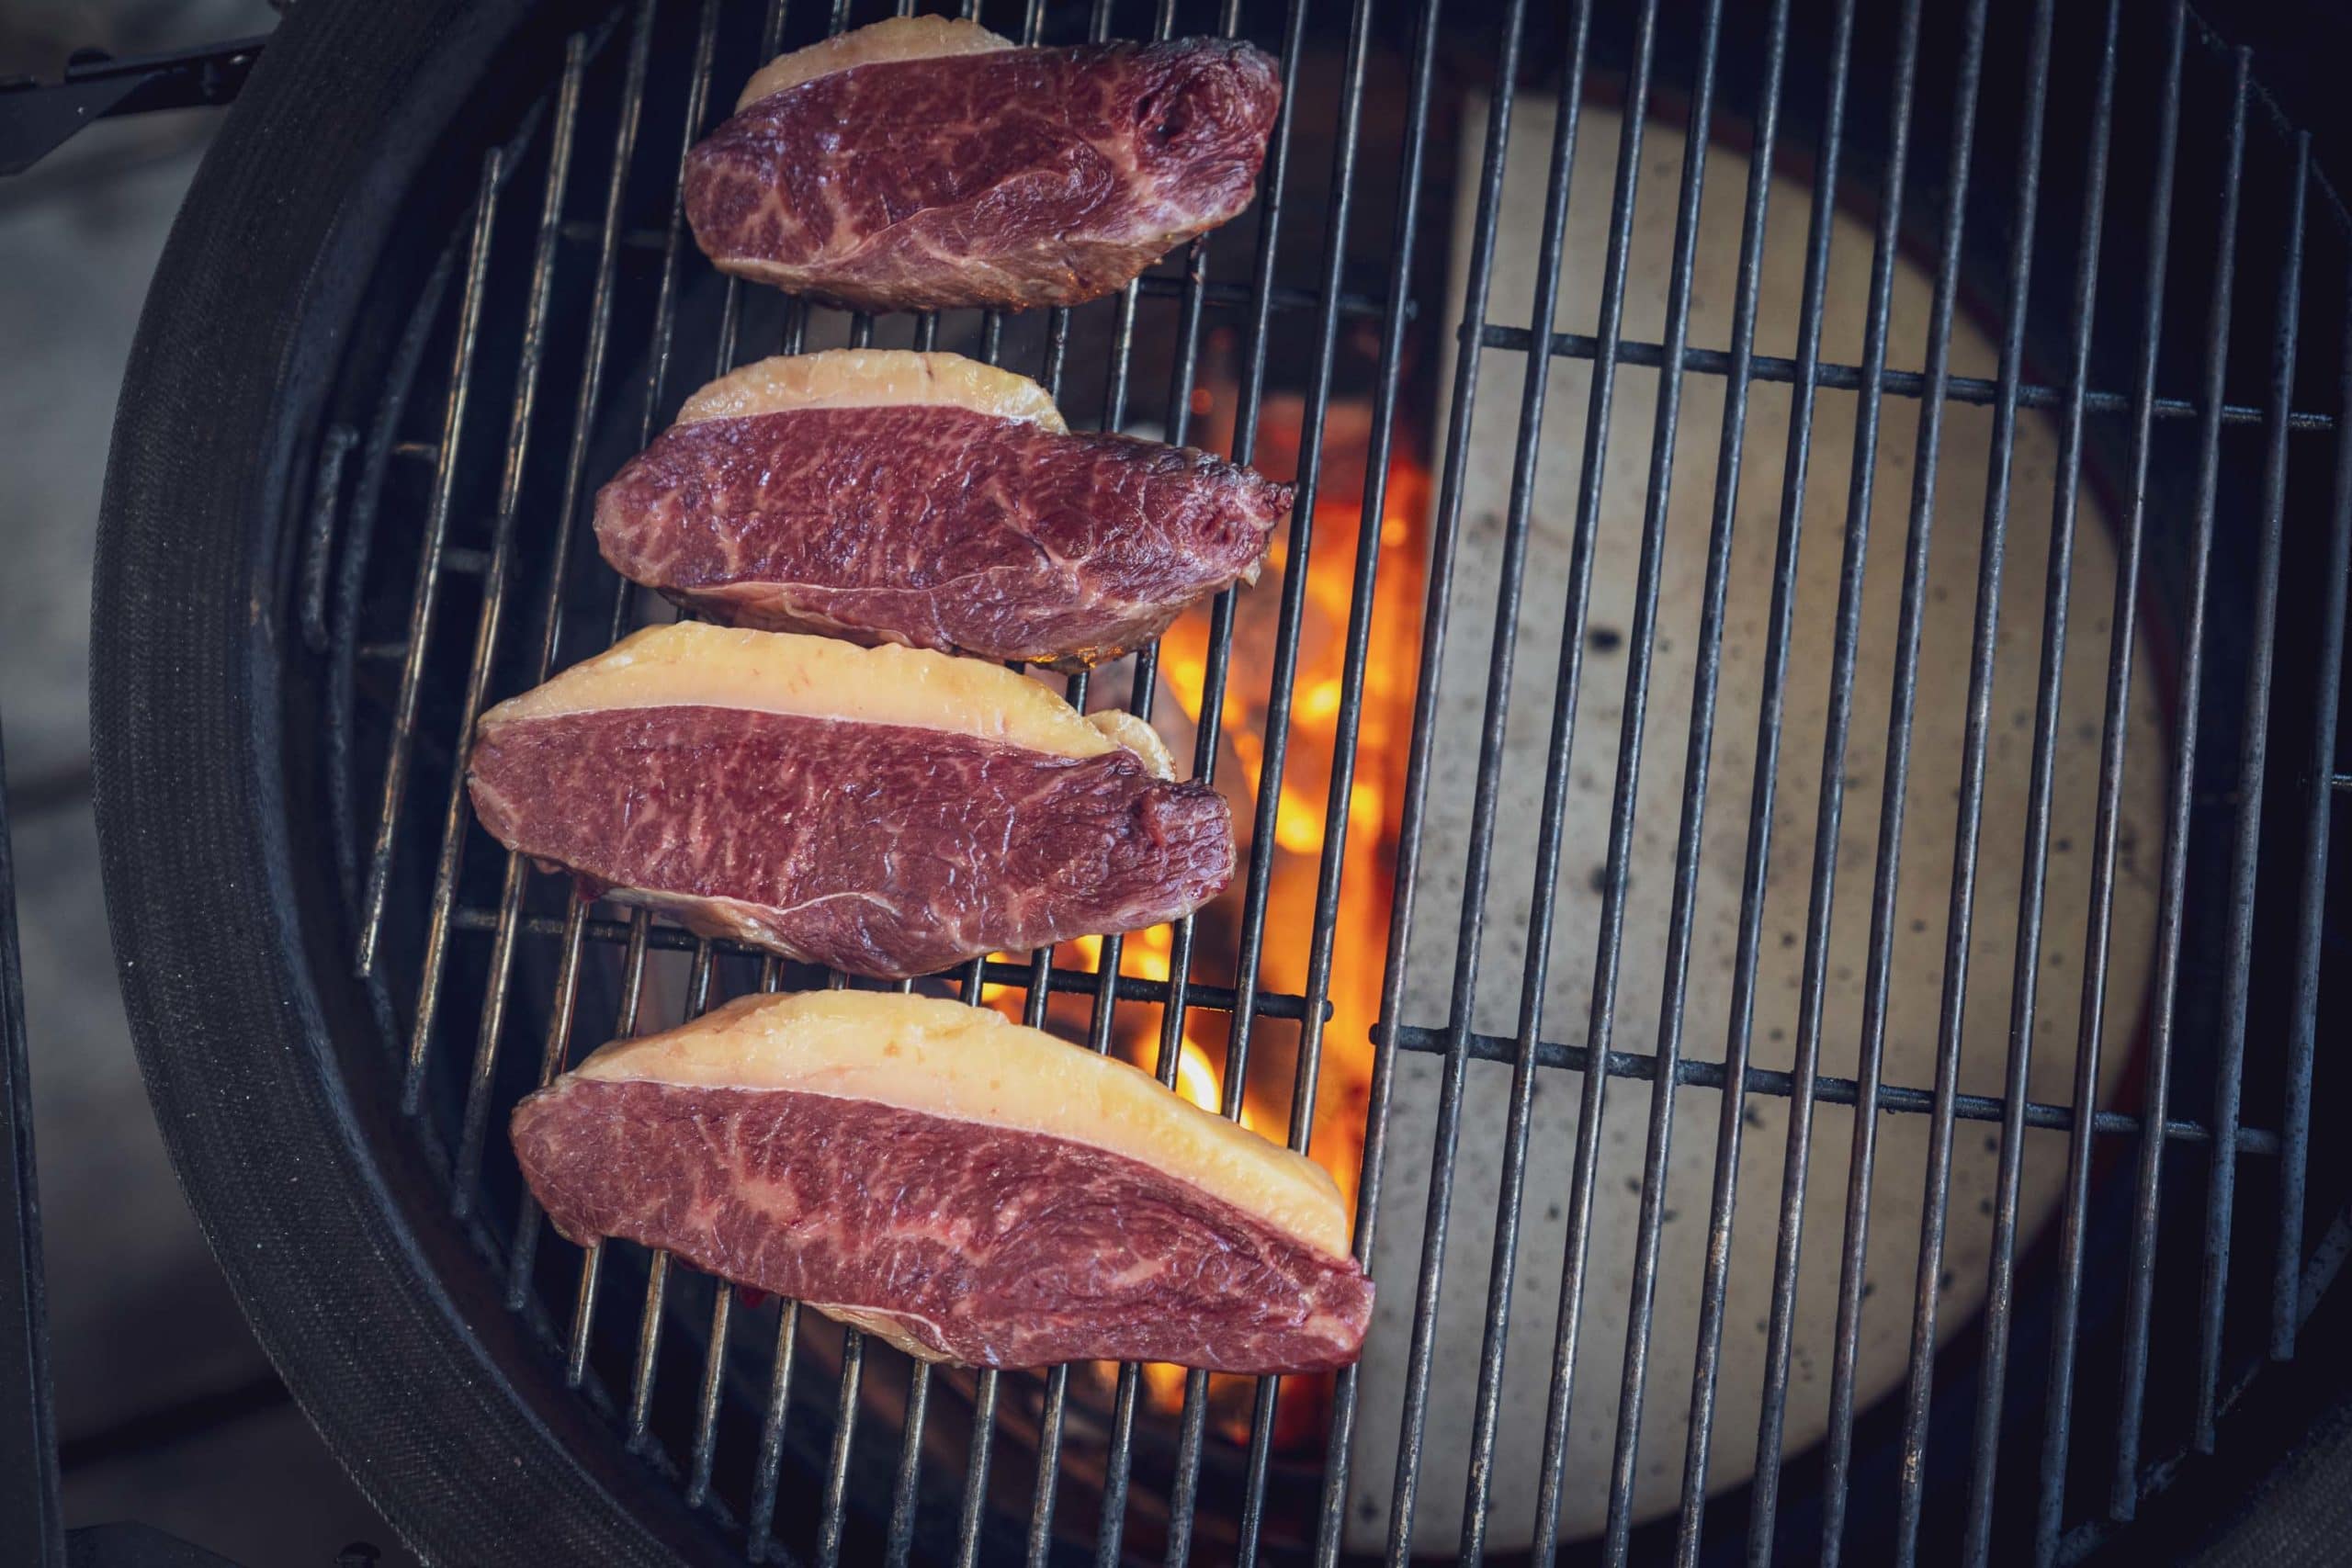 Wir grillen die einzelnen Tafelspitz Steaks direkt über dem Feuer